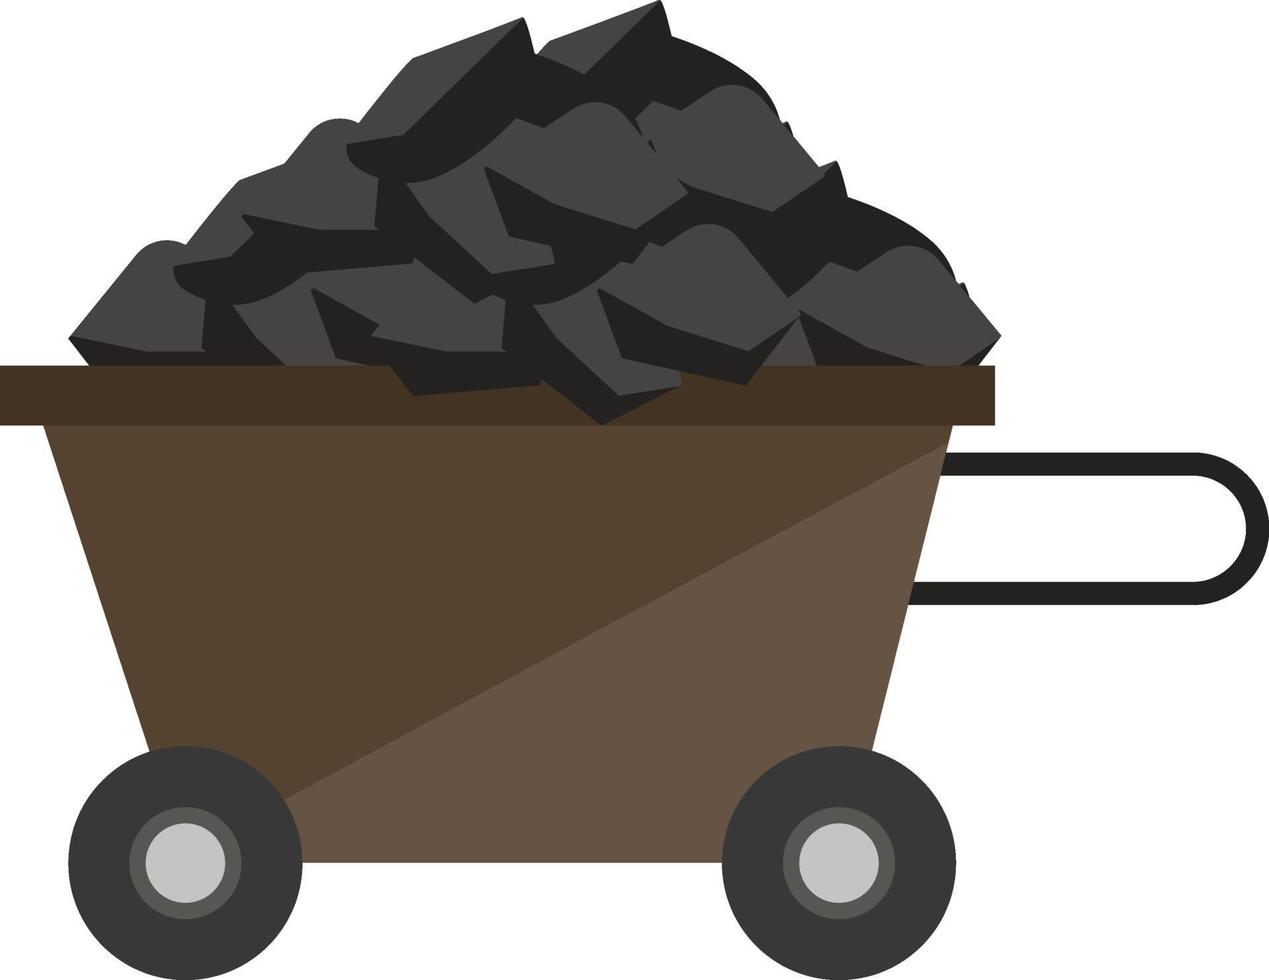 Chariot à charbon, illustration, vecteur sur fond blanc.